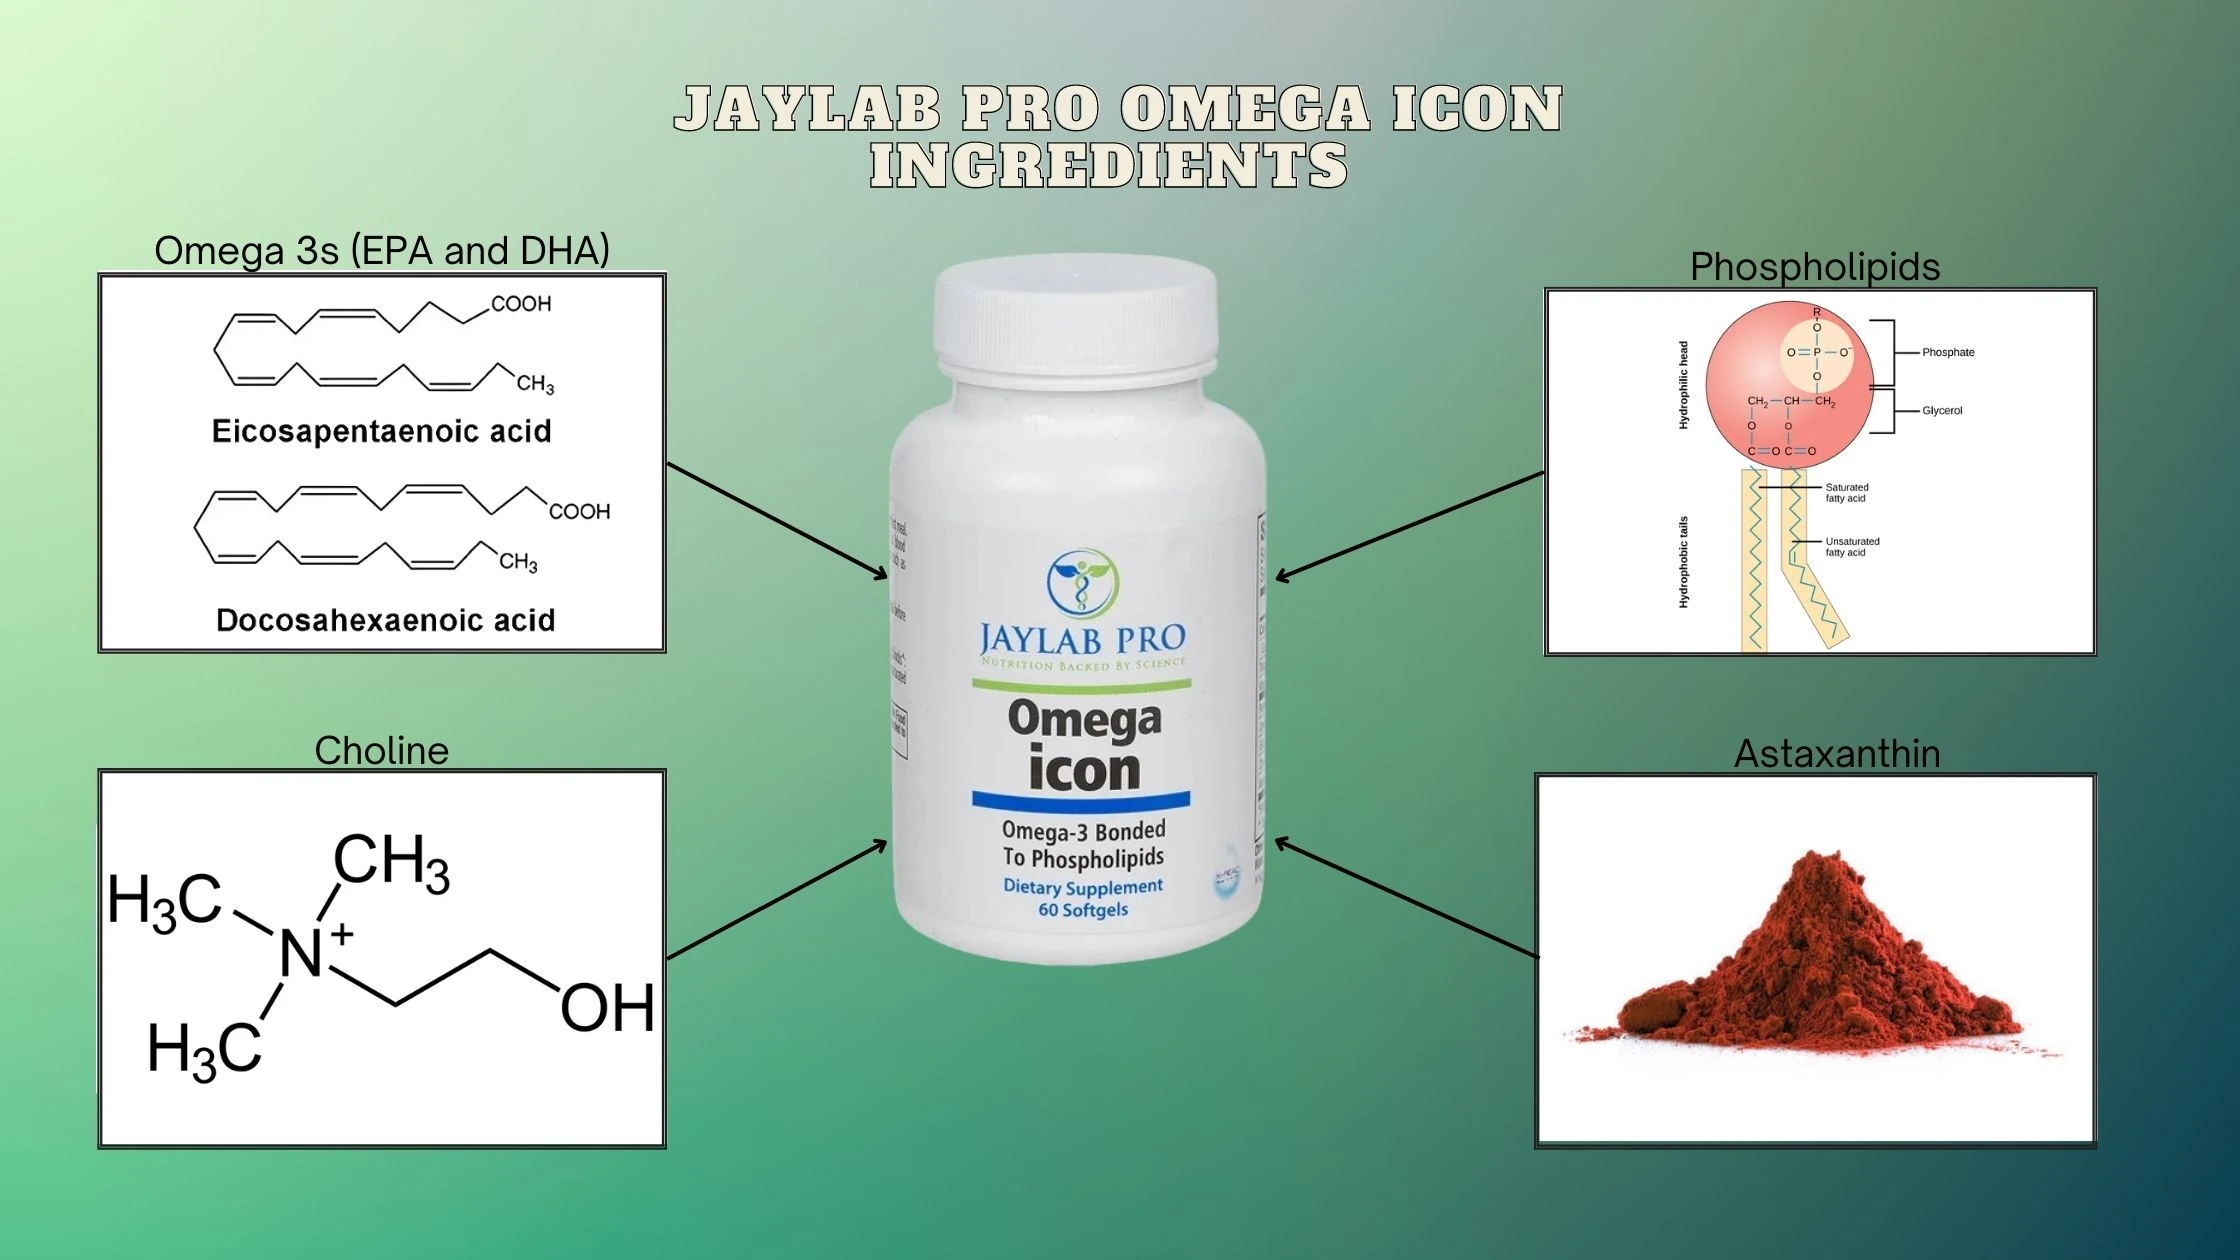 JayLab Pro Omega Icon ingredients 